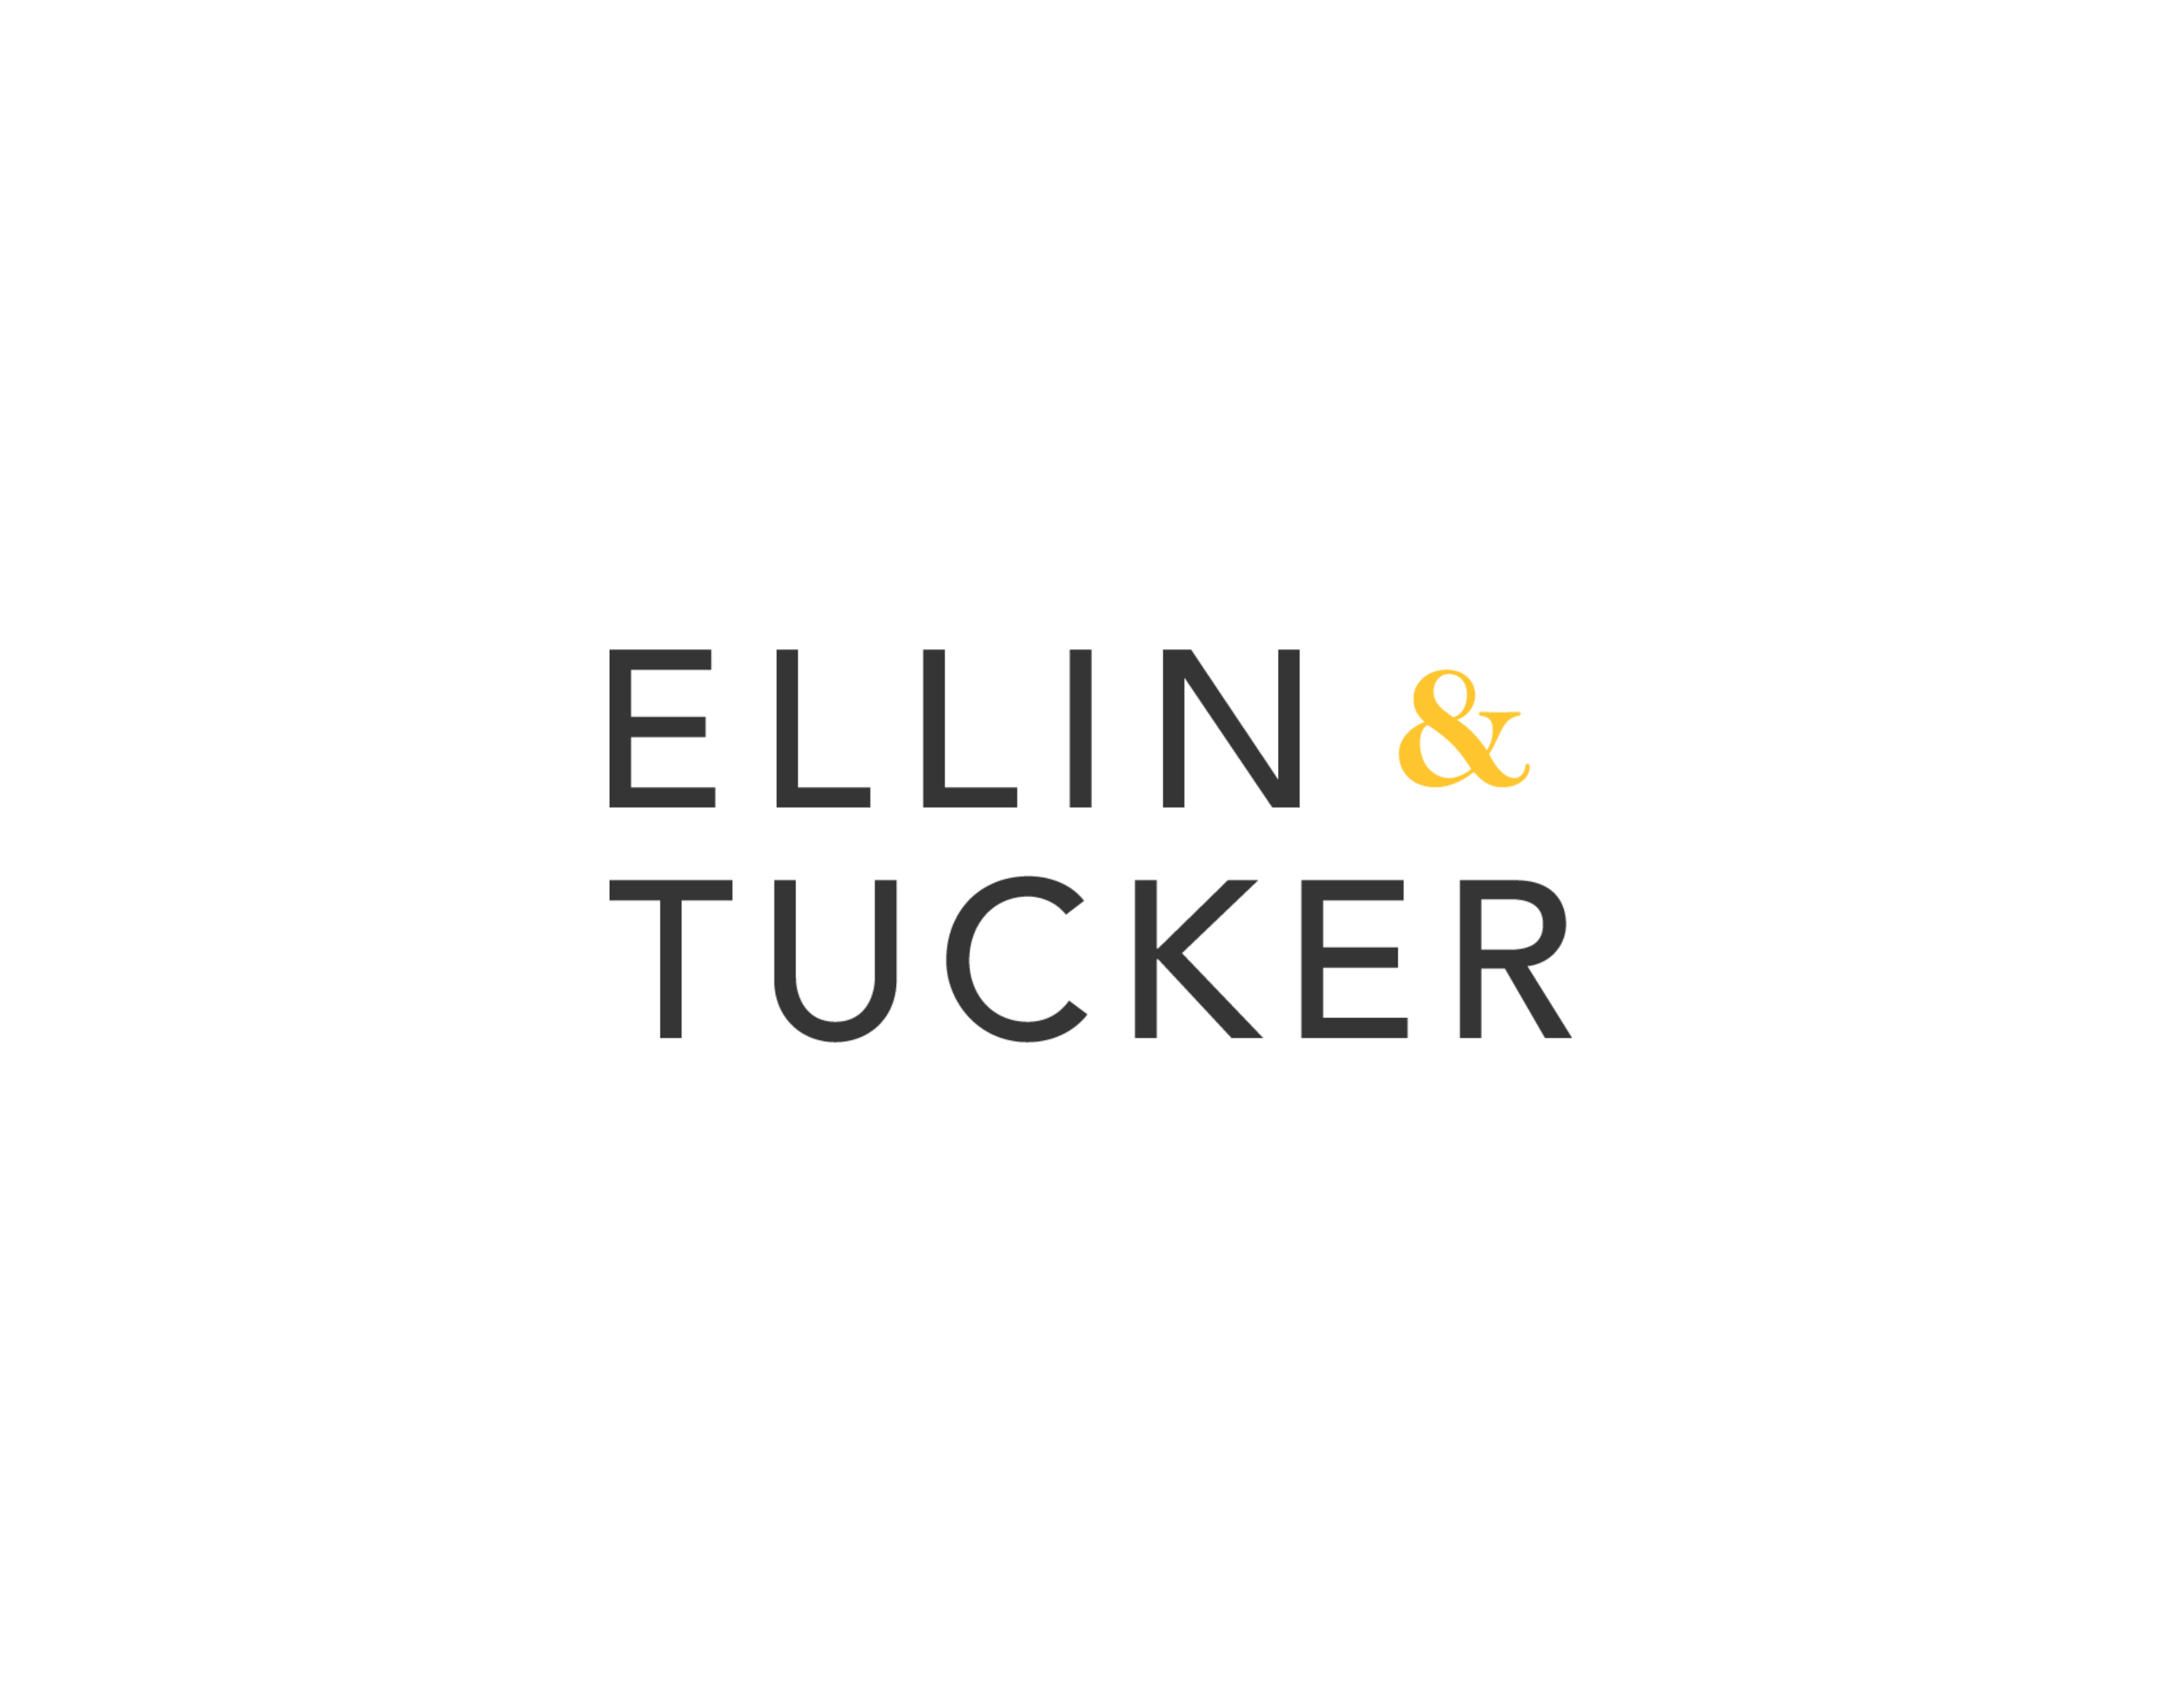 Ellin & Tucker stacked logo.